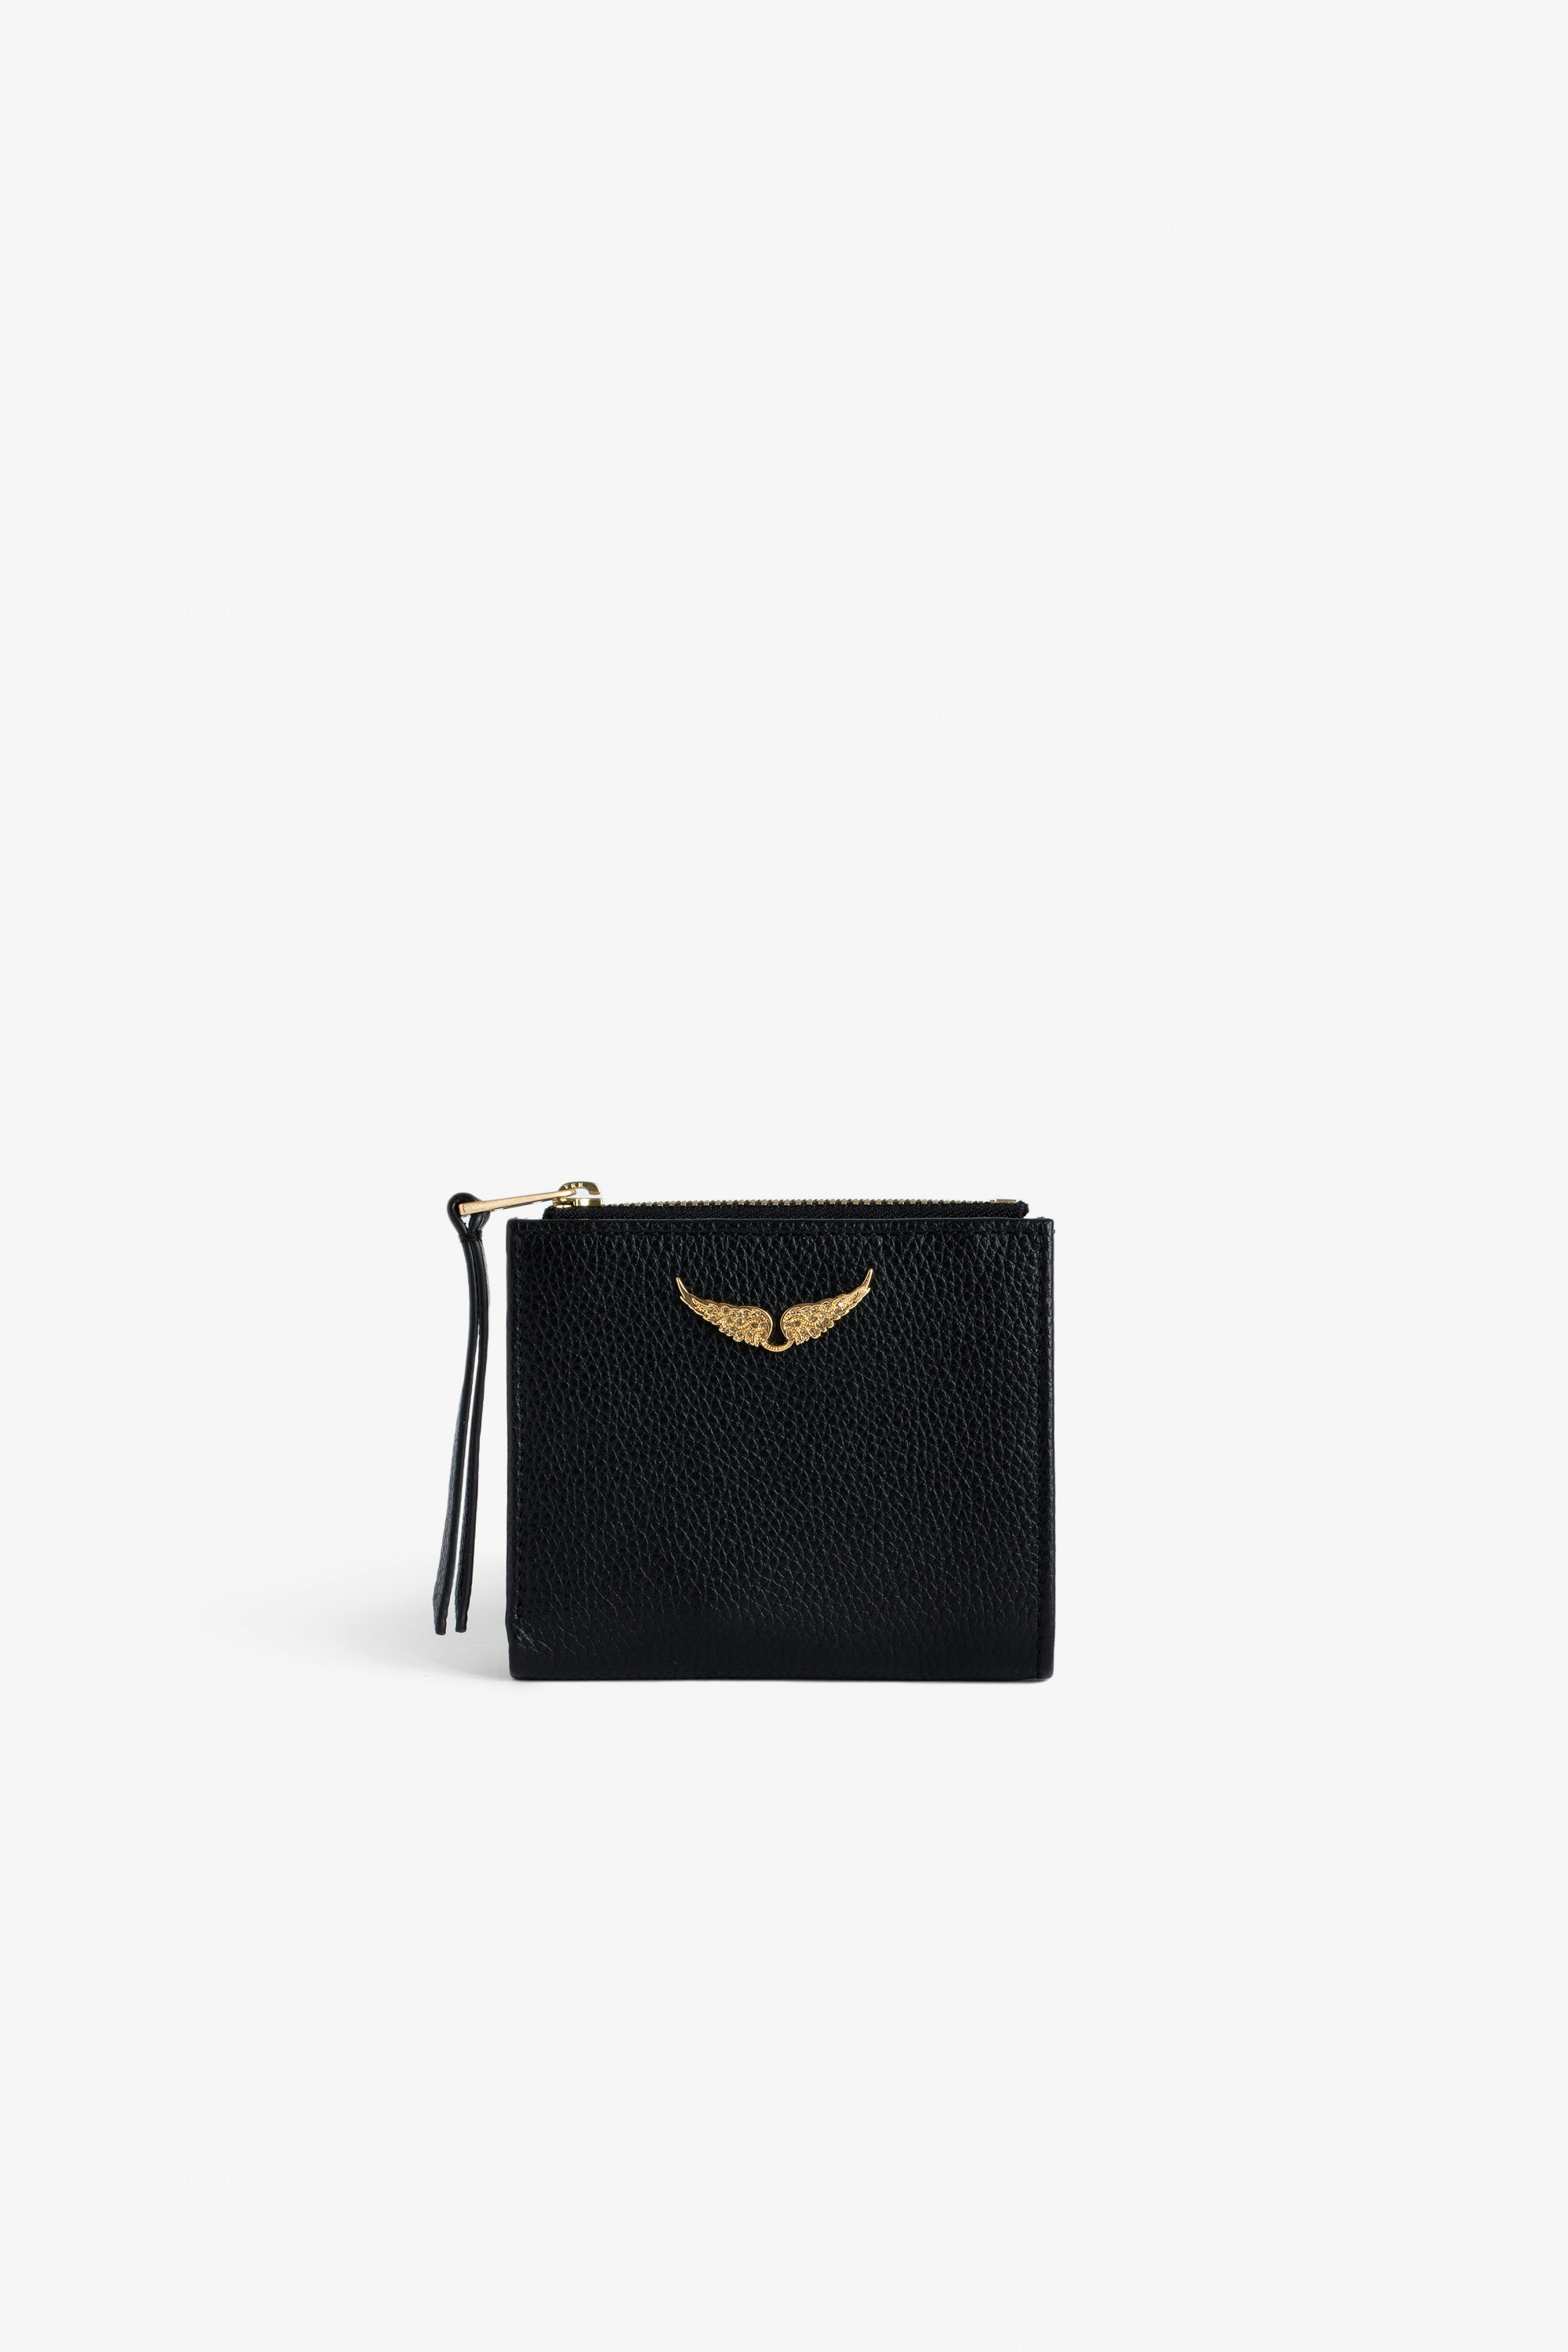 Portemonnaie ZV Fold Schwarzes Portemonnaie aus genarbtem Leder mit goldenem Flügel-Charm mit Strass für Damen.